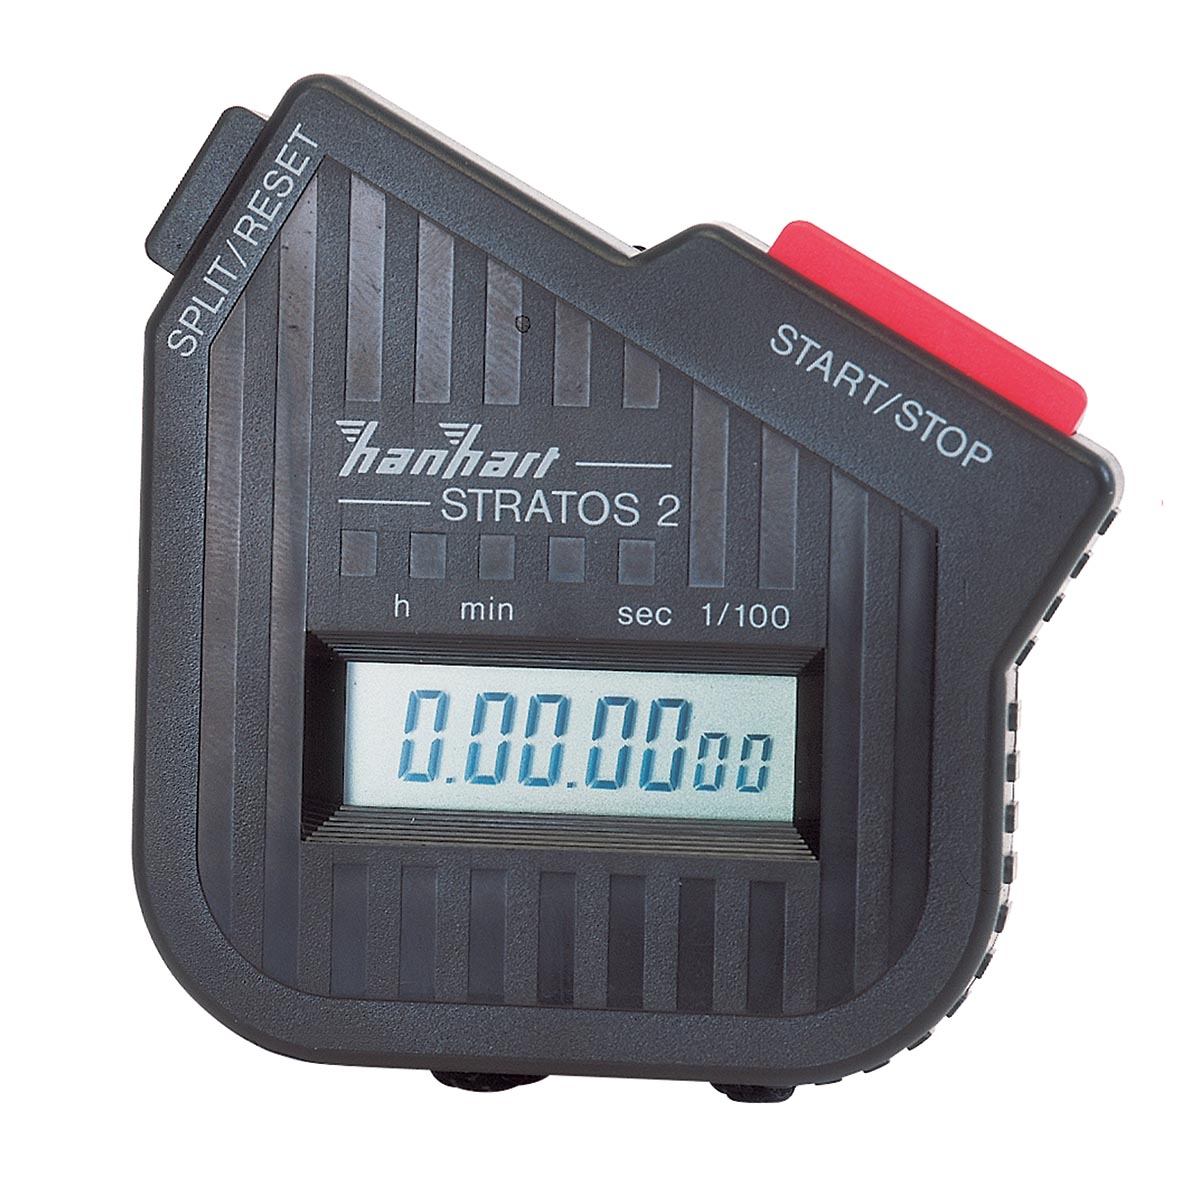 Cronometro digitale - 1002811 - Hanhart - U11902 - Misurazione di tempo -  3B Scientific